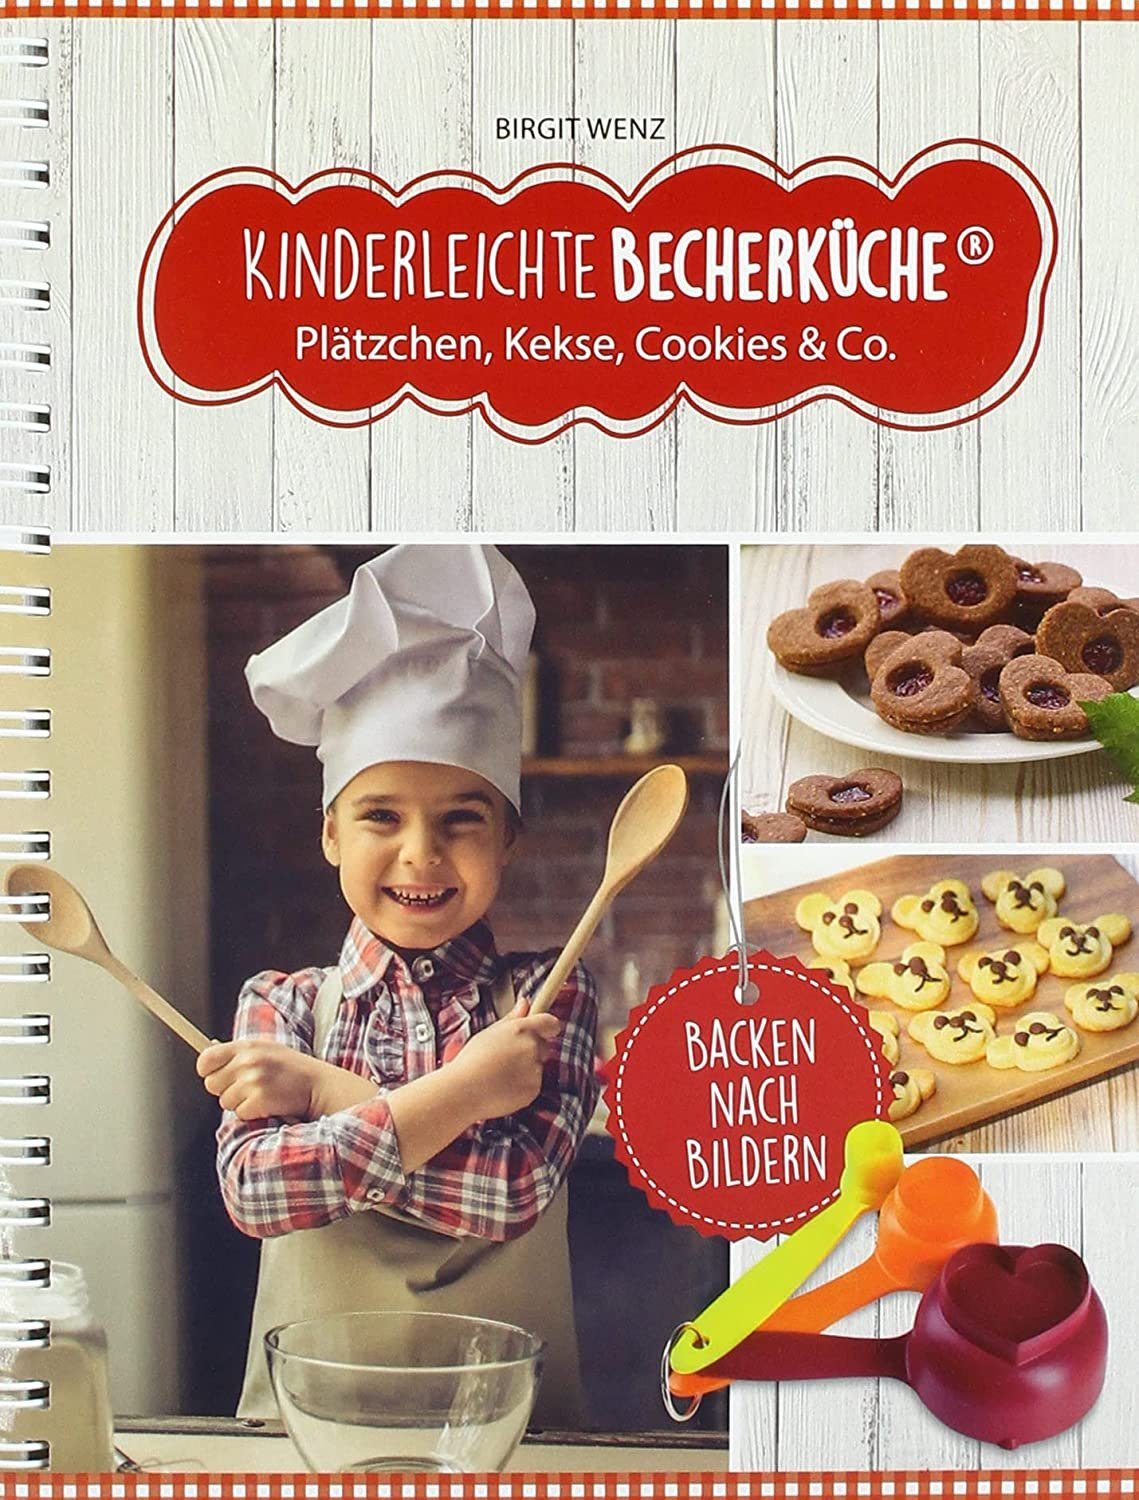 Kinderleichte Becherküche Notizbuch Plätzchen Kekse Co., Rezeptbuch, & Cookies Backbuch